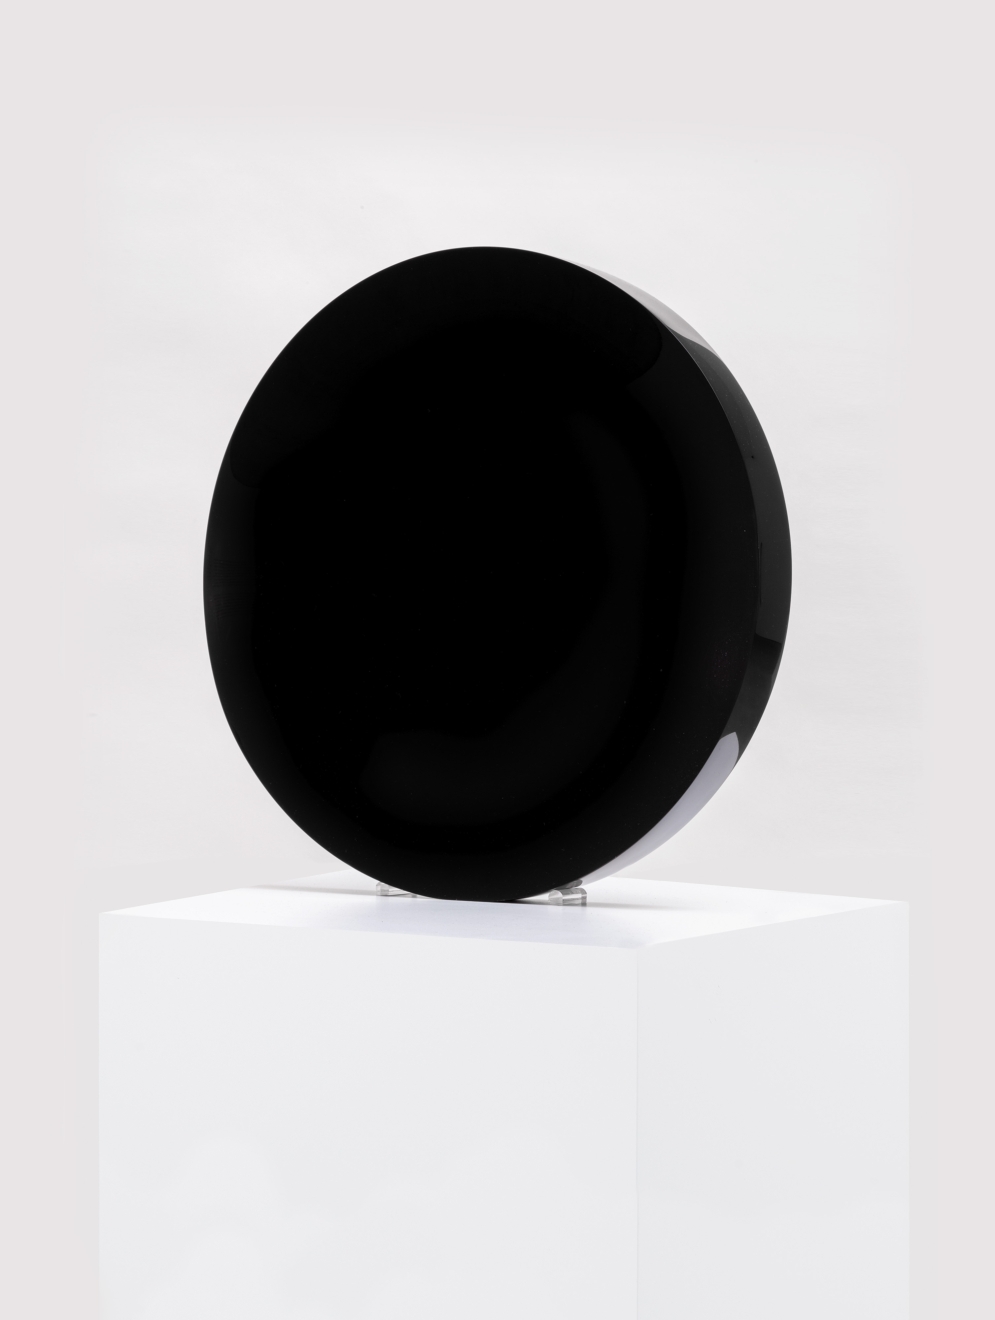 Fred Eversley Untitled (Black Hole), 1974